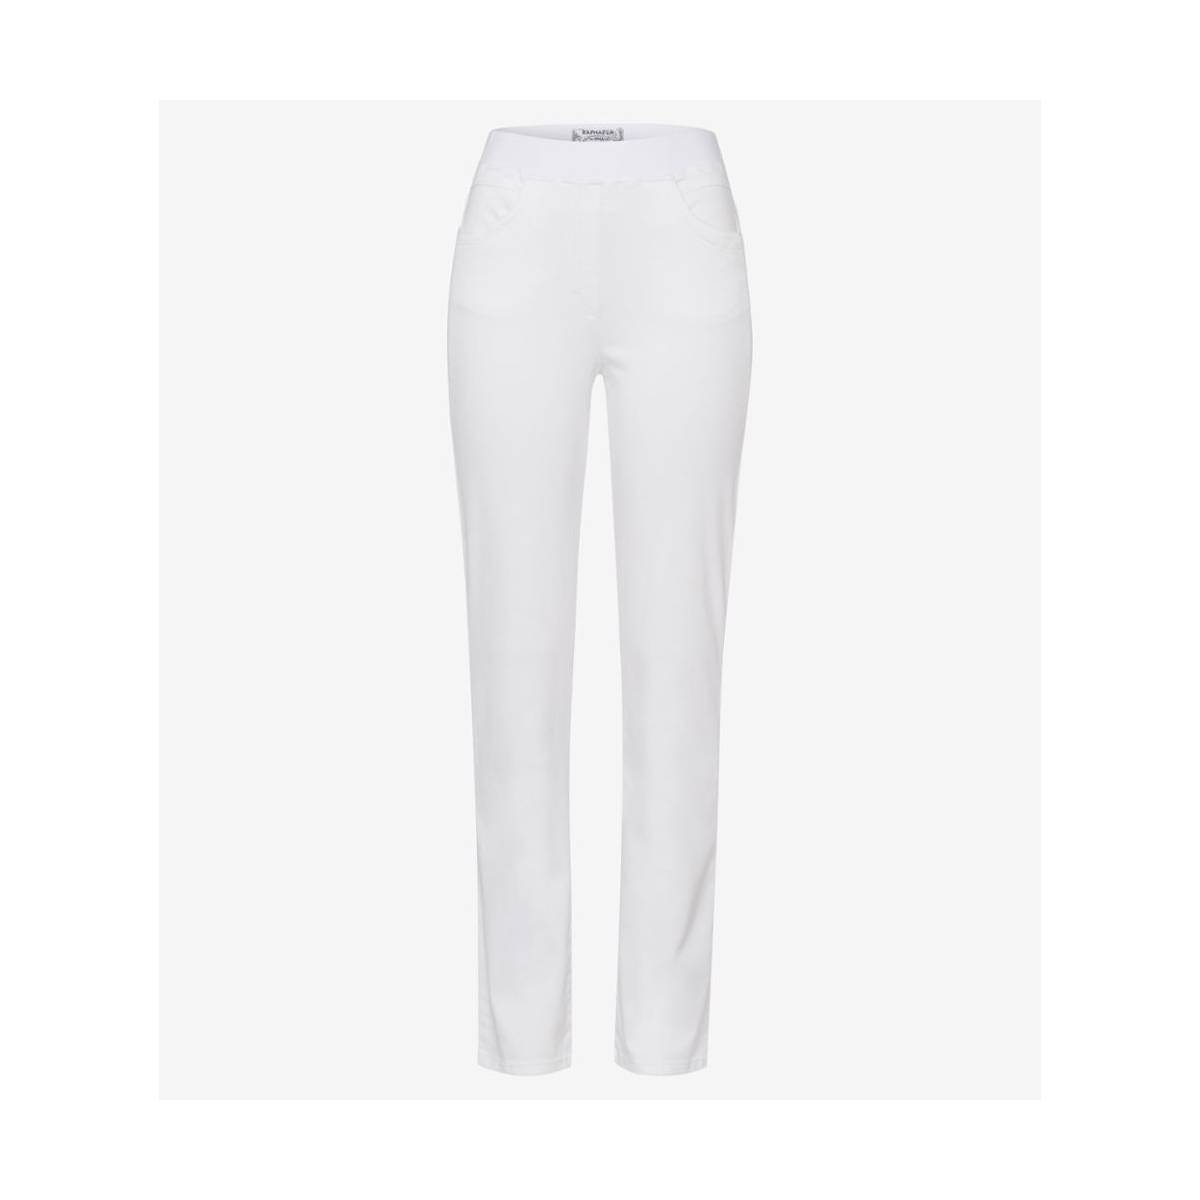 RAPHAELA  broeken wit -  model 11-6308 10918620 - Dameskleding broeken wit